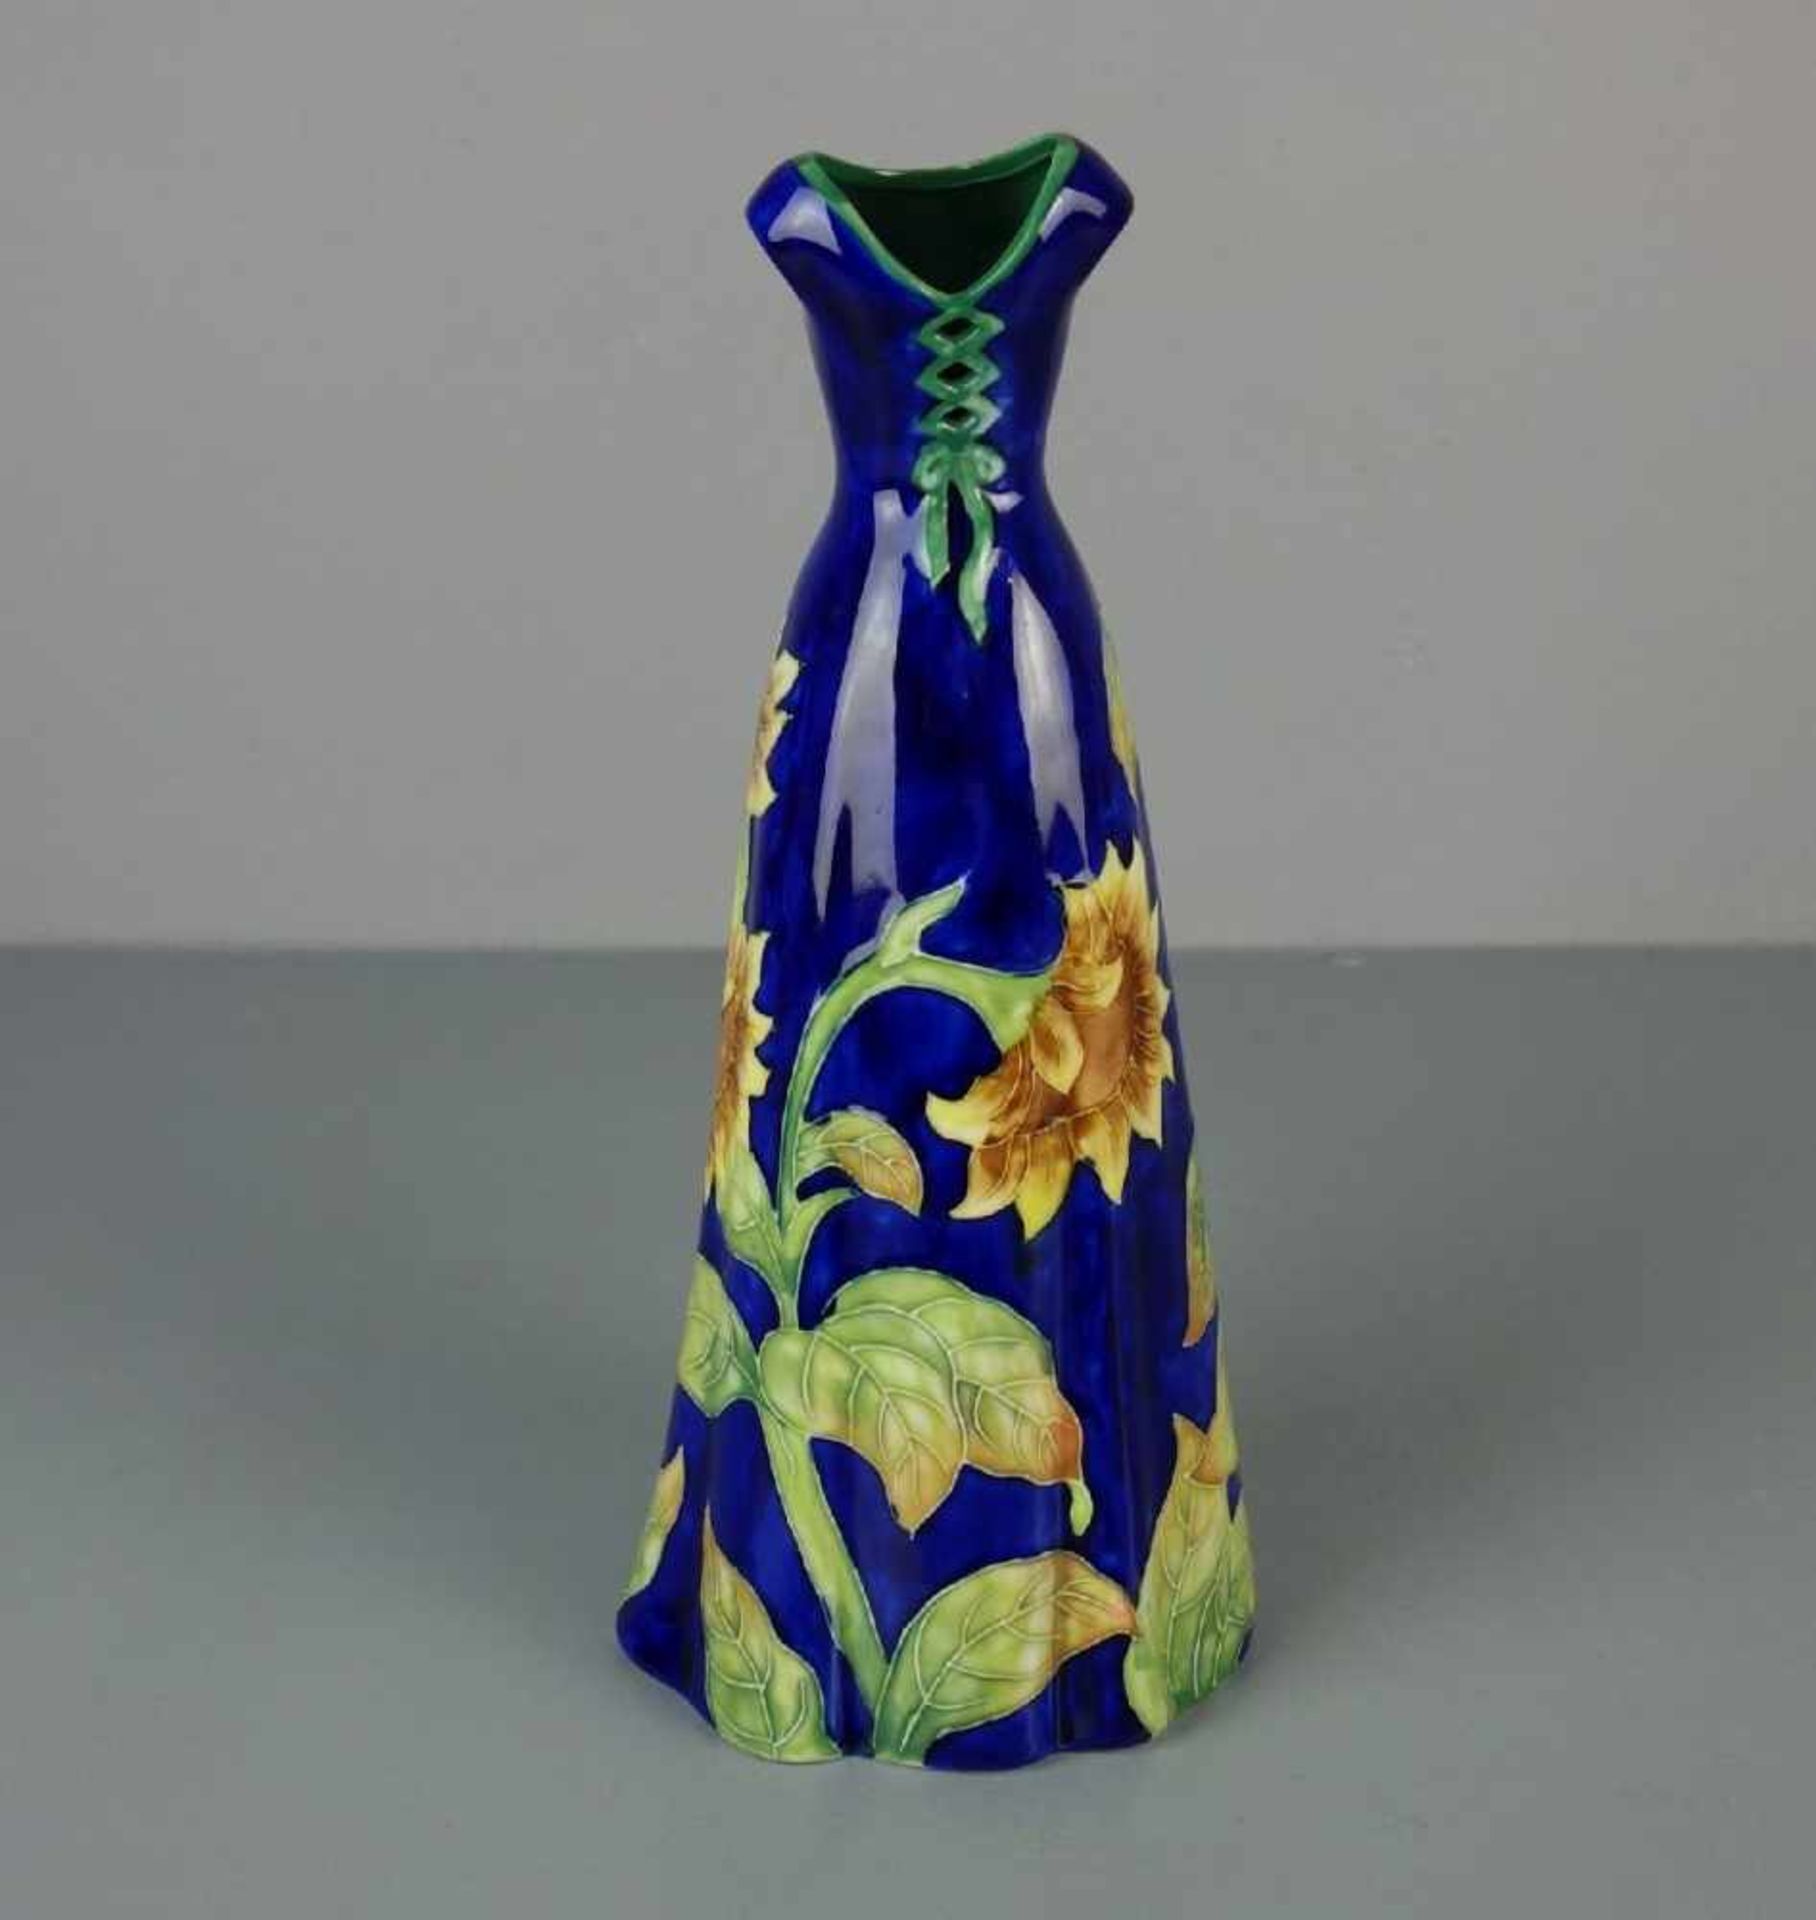 VASE in Form eines Kleides, Keramik, unter dem Stand u. a. gemarkt "Benaya" und bezeichnet "MM '06". - Bild 3 aus 4